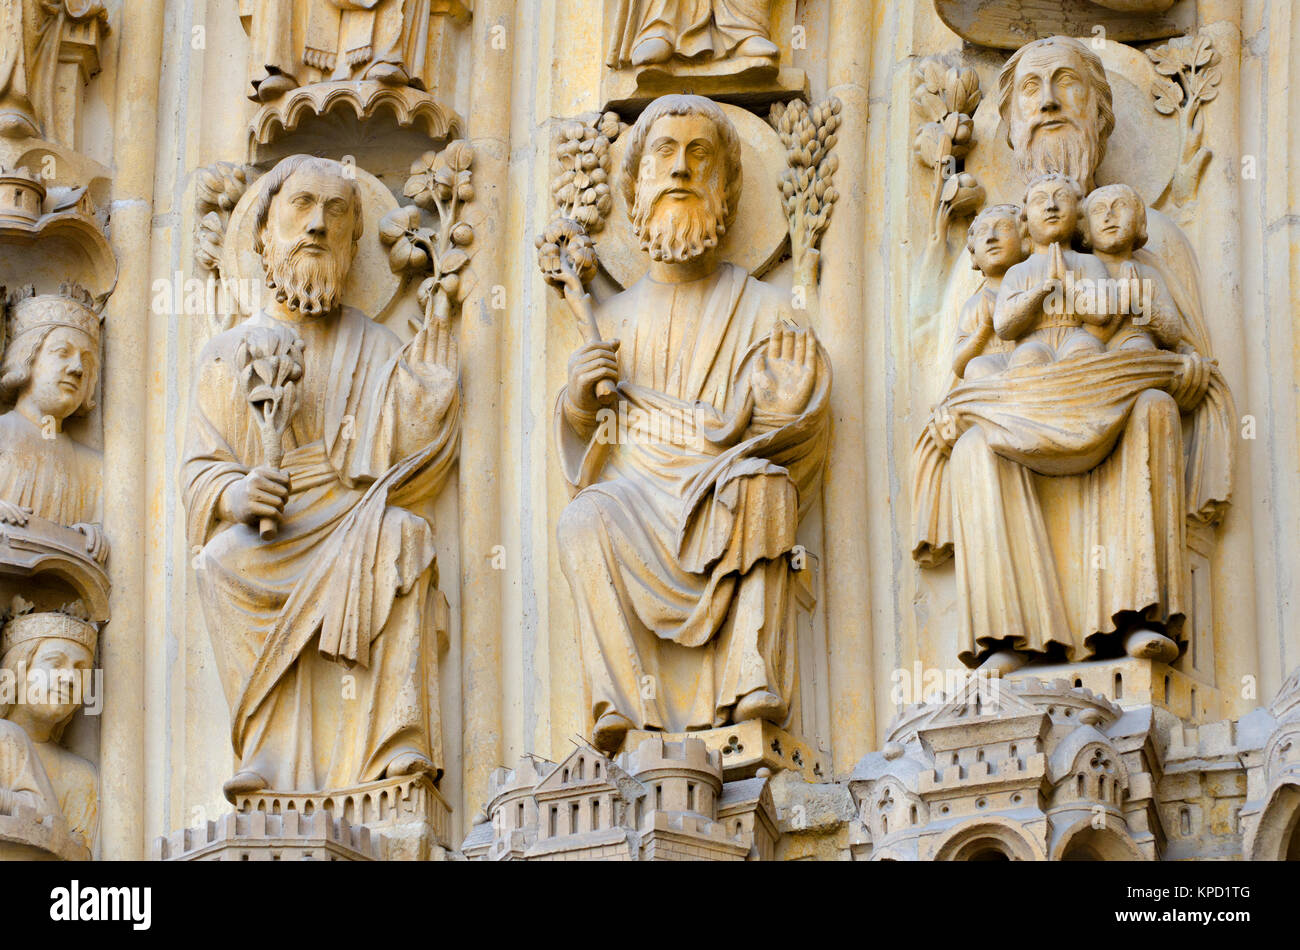 Paris, France. Notre Dame cathedral / Notre-Dame de Paris. Portal of the Last Judgement - Facade detail Stock Photo